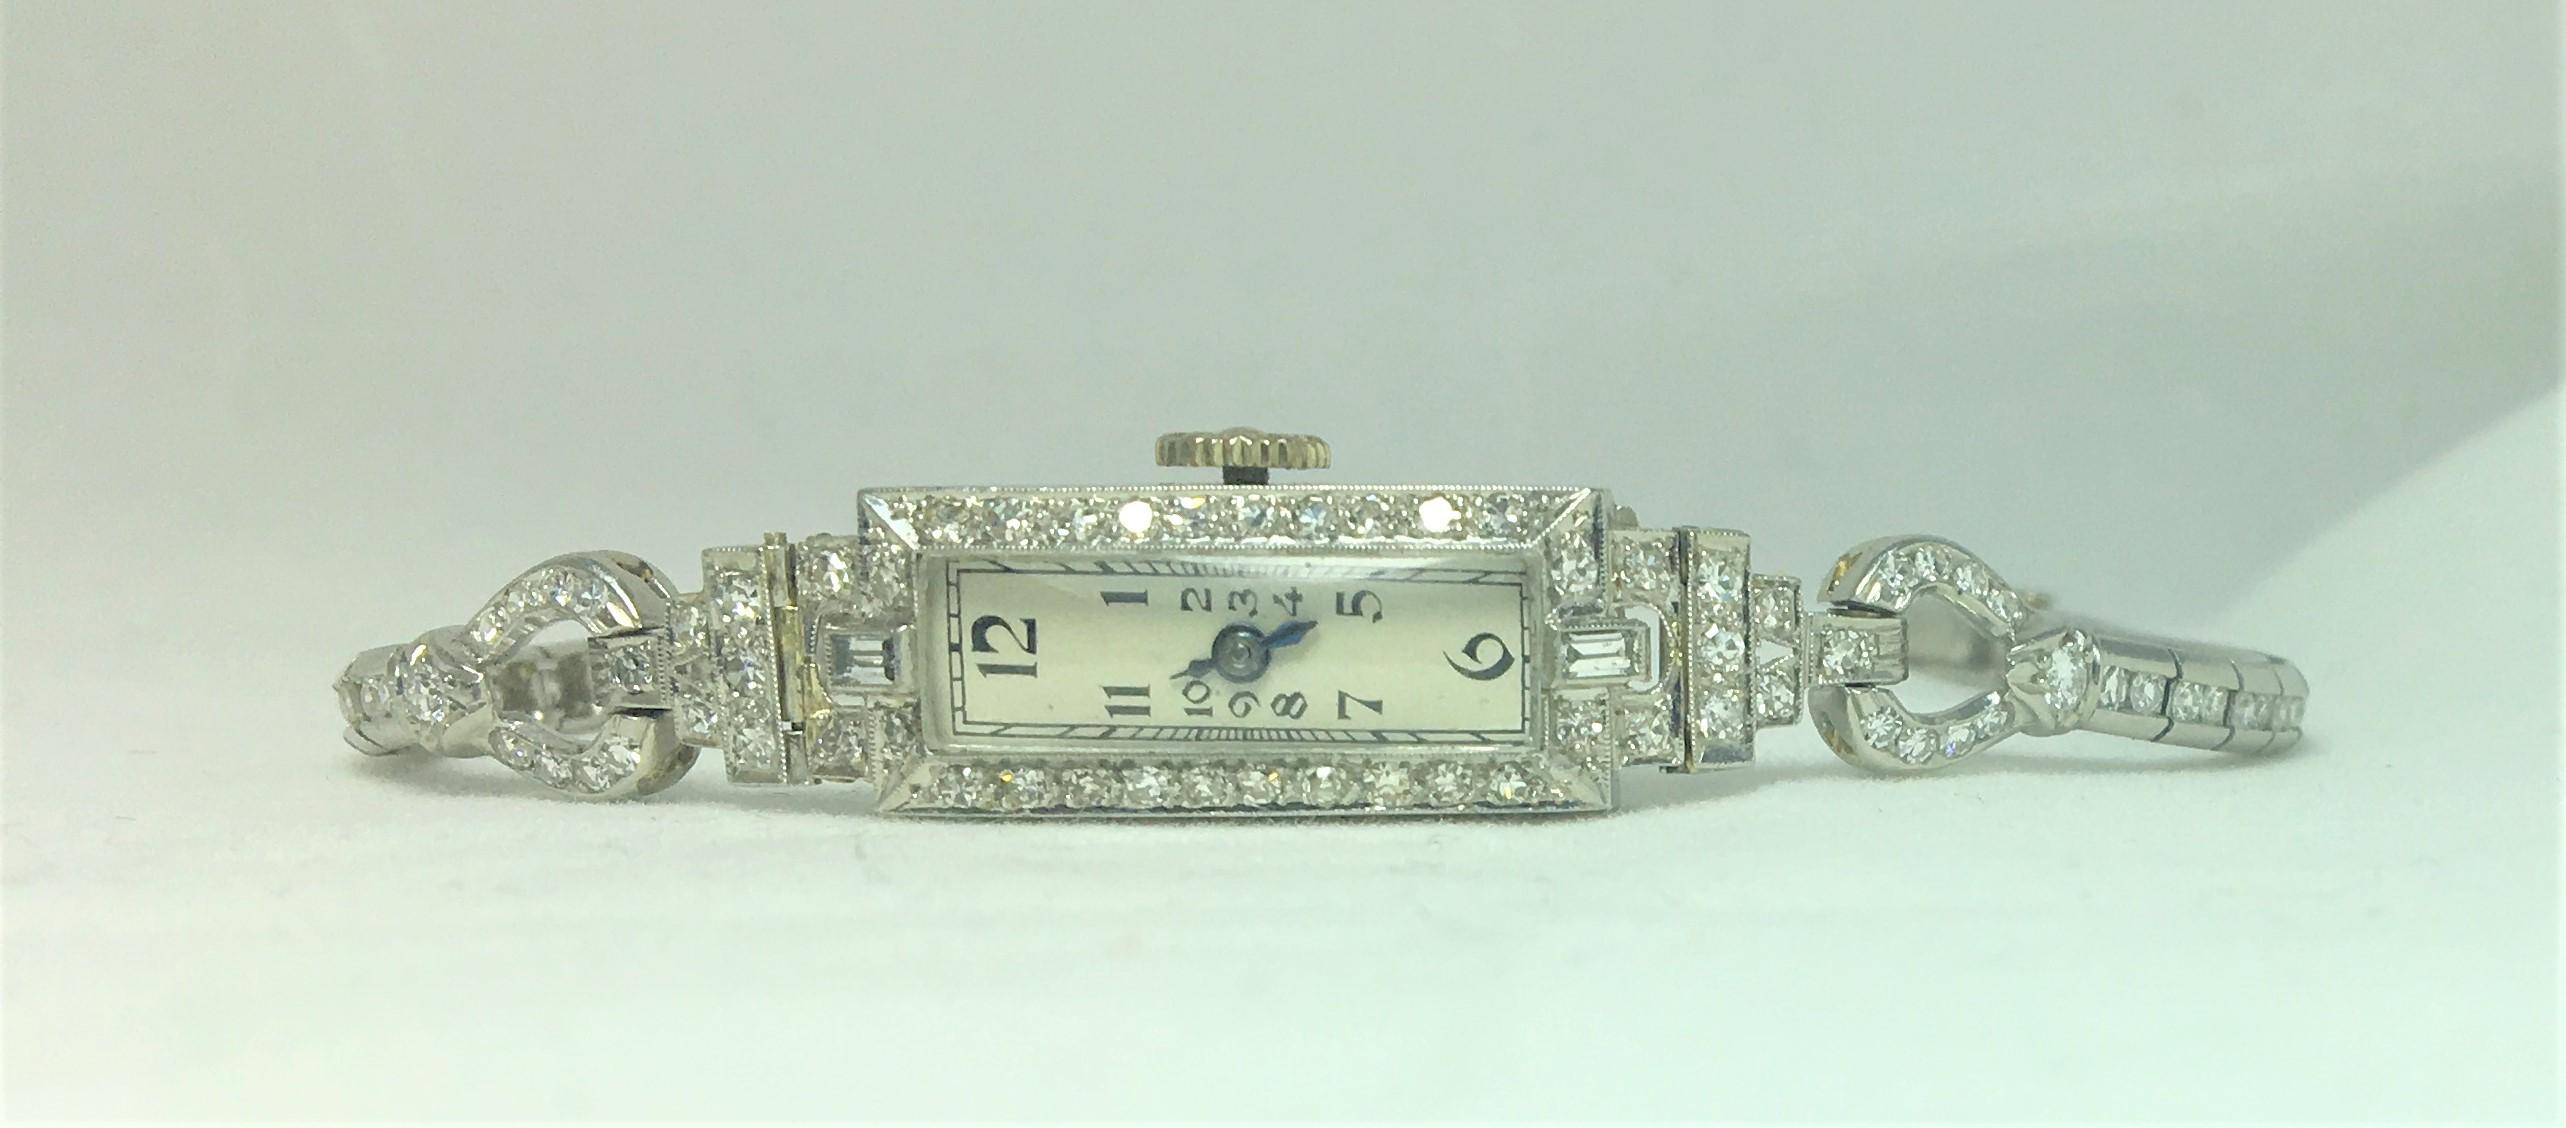 Cette montre a un design fin et élégant
Poids total des diamants : environ 2 carats,
108 diamants d'une taille allant d'environ 0,01 à 0,03 carat chacun
6 pouces de long
Platine 
La montre fonctionne avec les pièces d'origine.
Fermeture à rabat avec